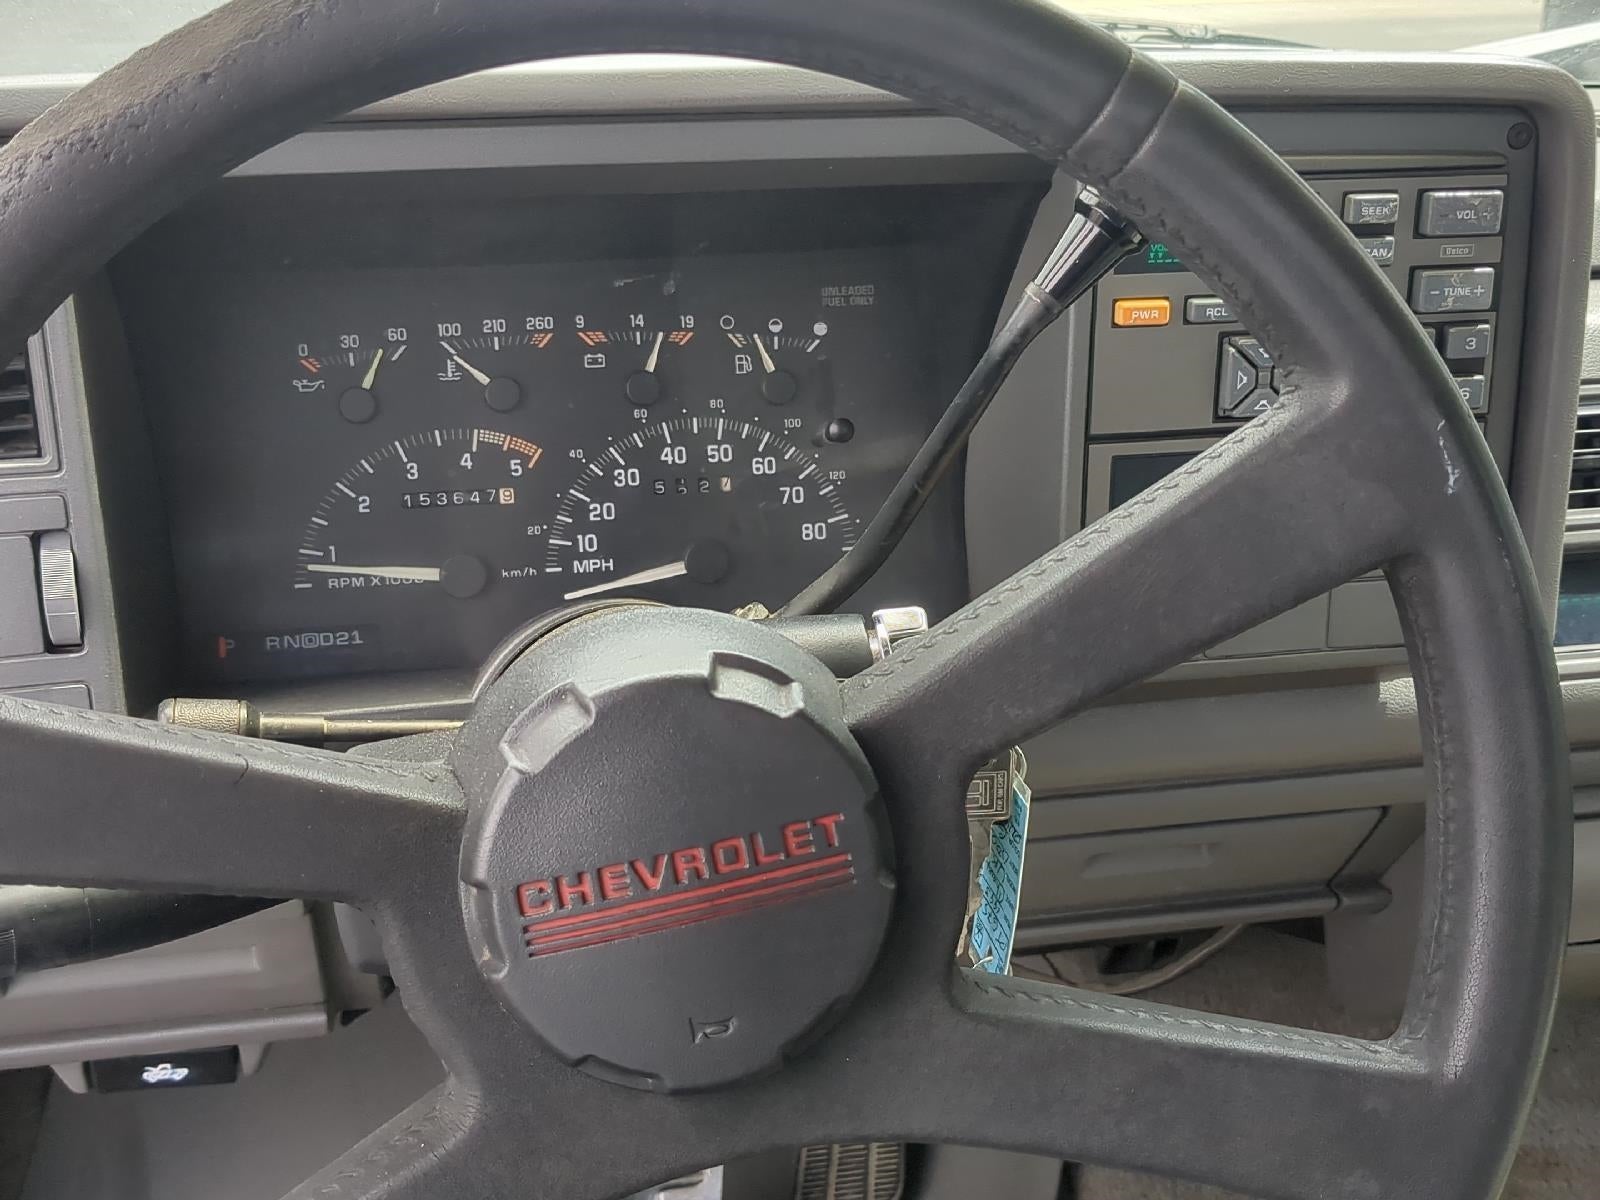 1993 Chevrolet C/K 1500 Base